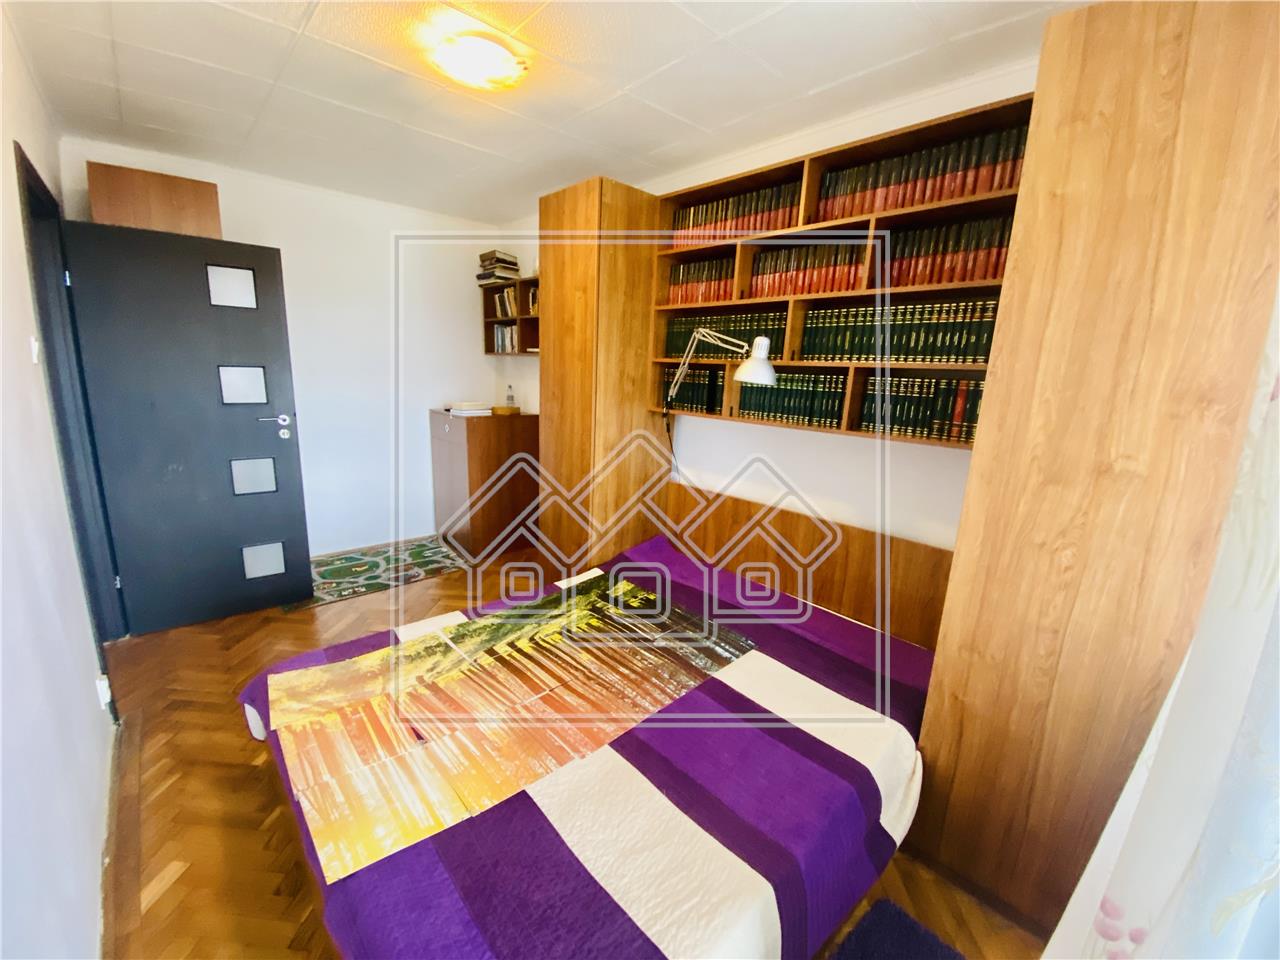 Wohnung zur Miete in Sibiu - 2 Zimmer und Balkon - Mihai Viteazu